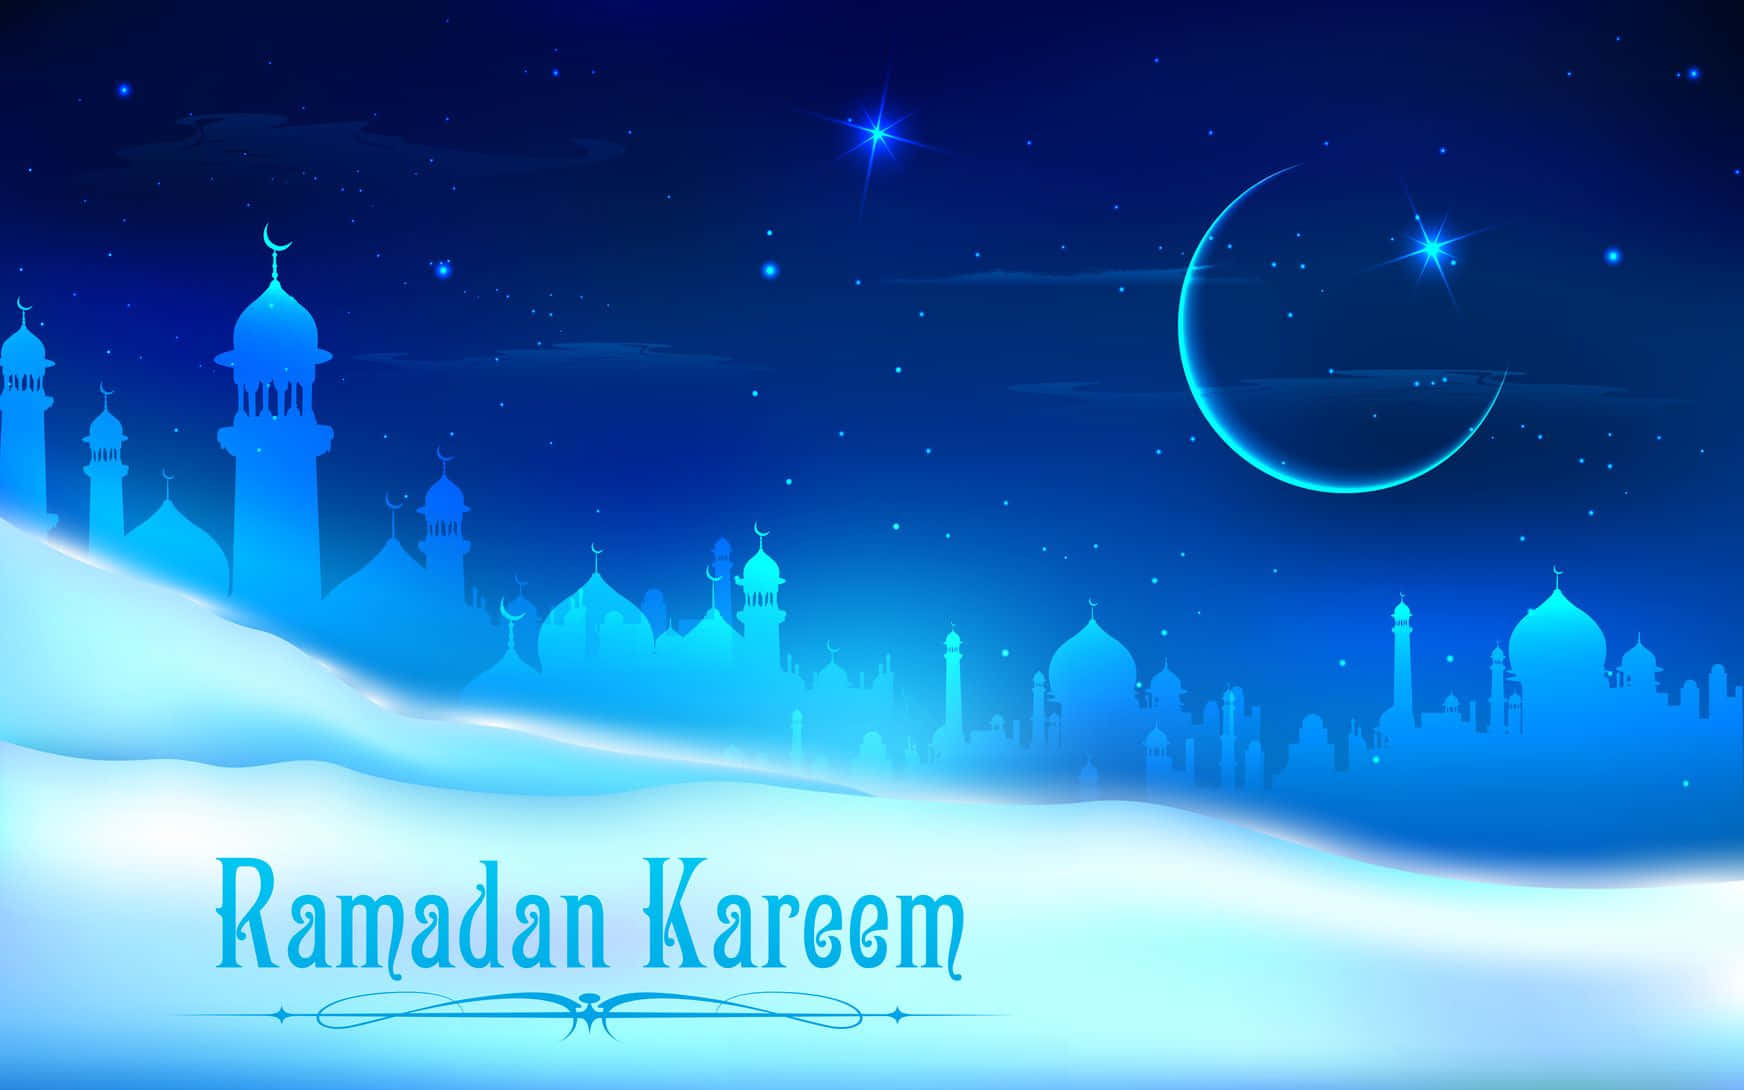 Omfamnagivar, Tagen Väck När Ramadan Återvänder